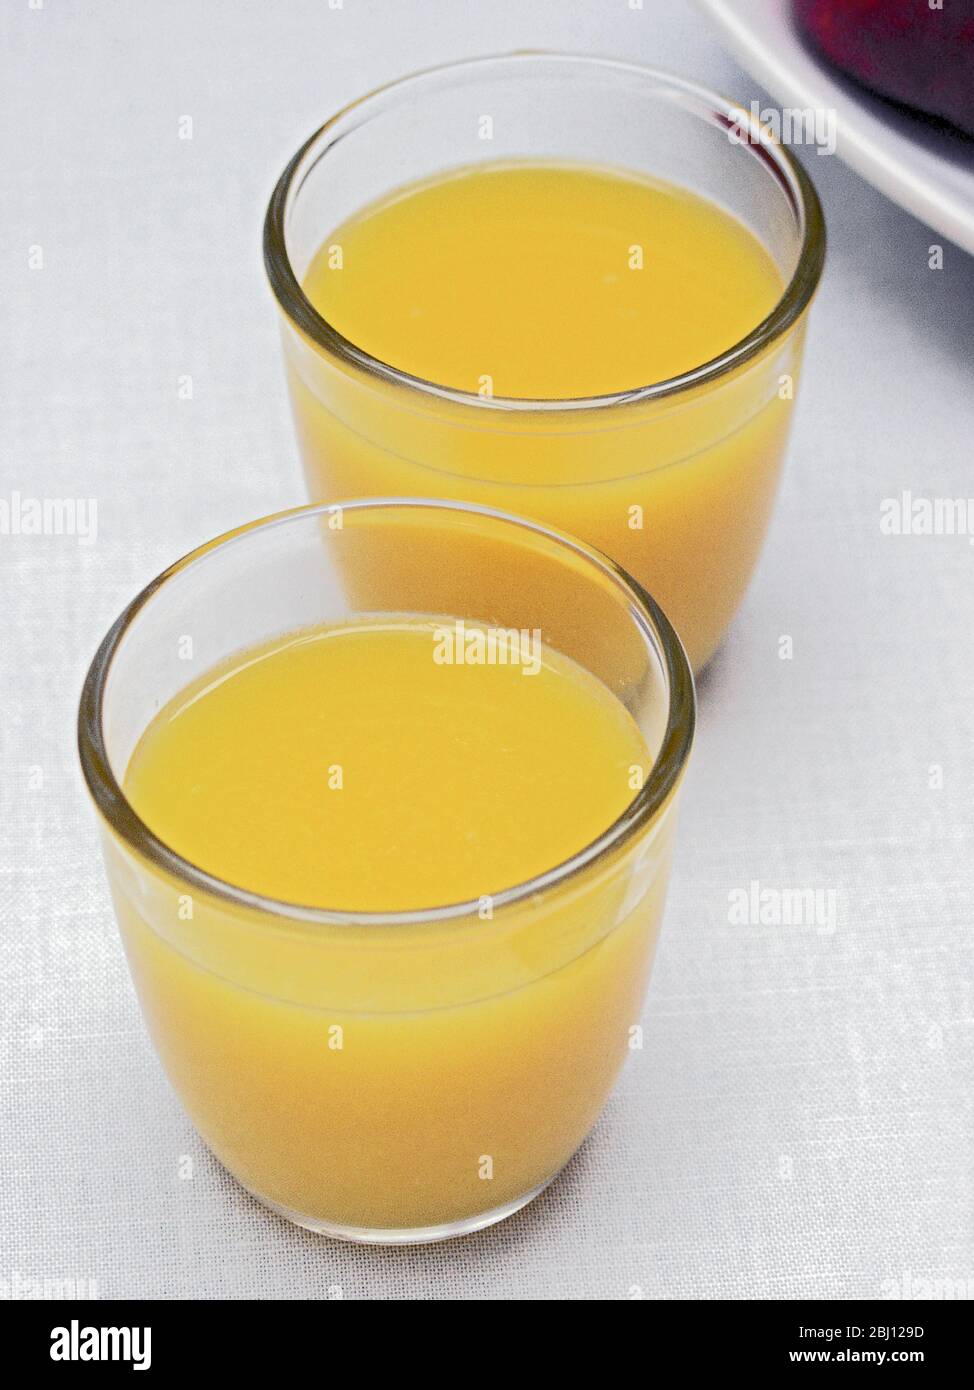 Zwei Gläser Orangensaft auf weißem Tischtuch - Stockfoto